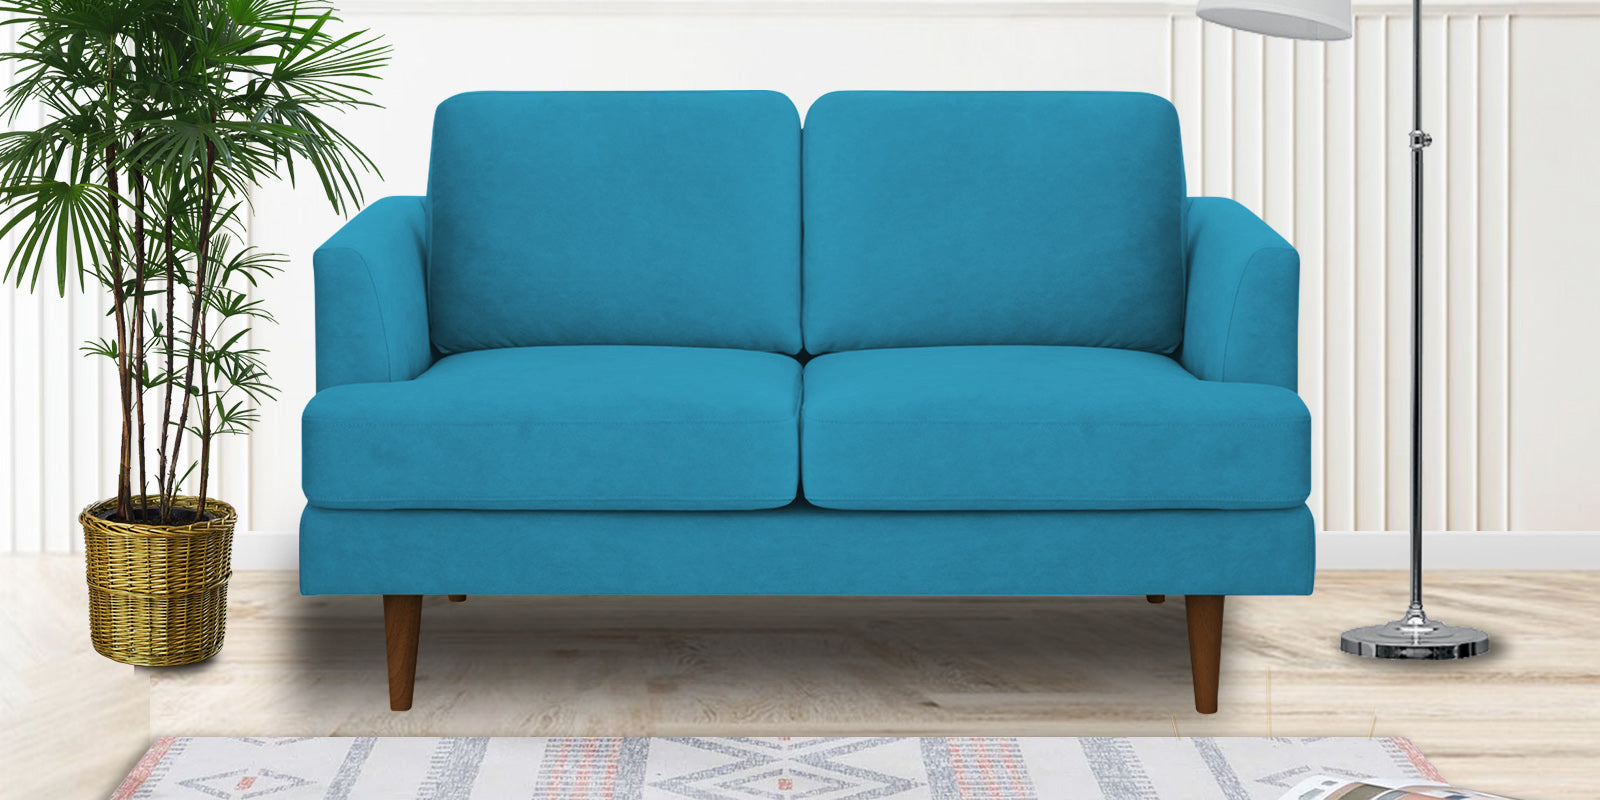 Motra Velvet 2 Seater Sofa in Aqua blue Colour